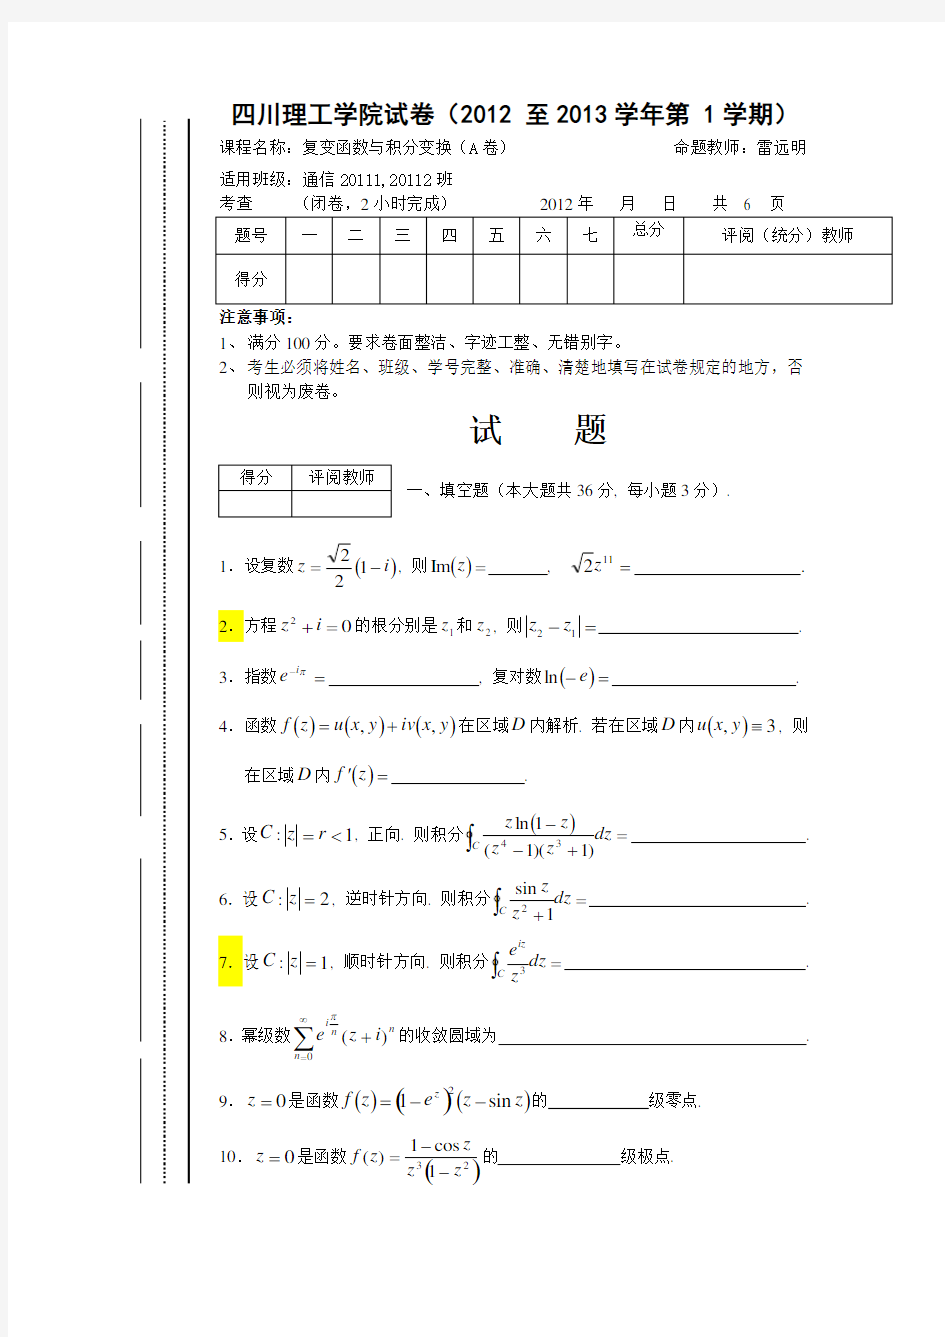 四川理工学院复变函数与积分变换试卷(12-13-1-A2)